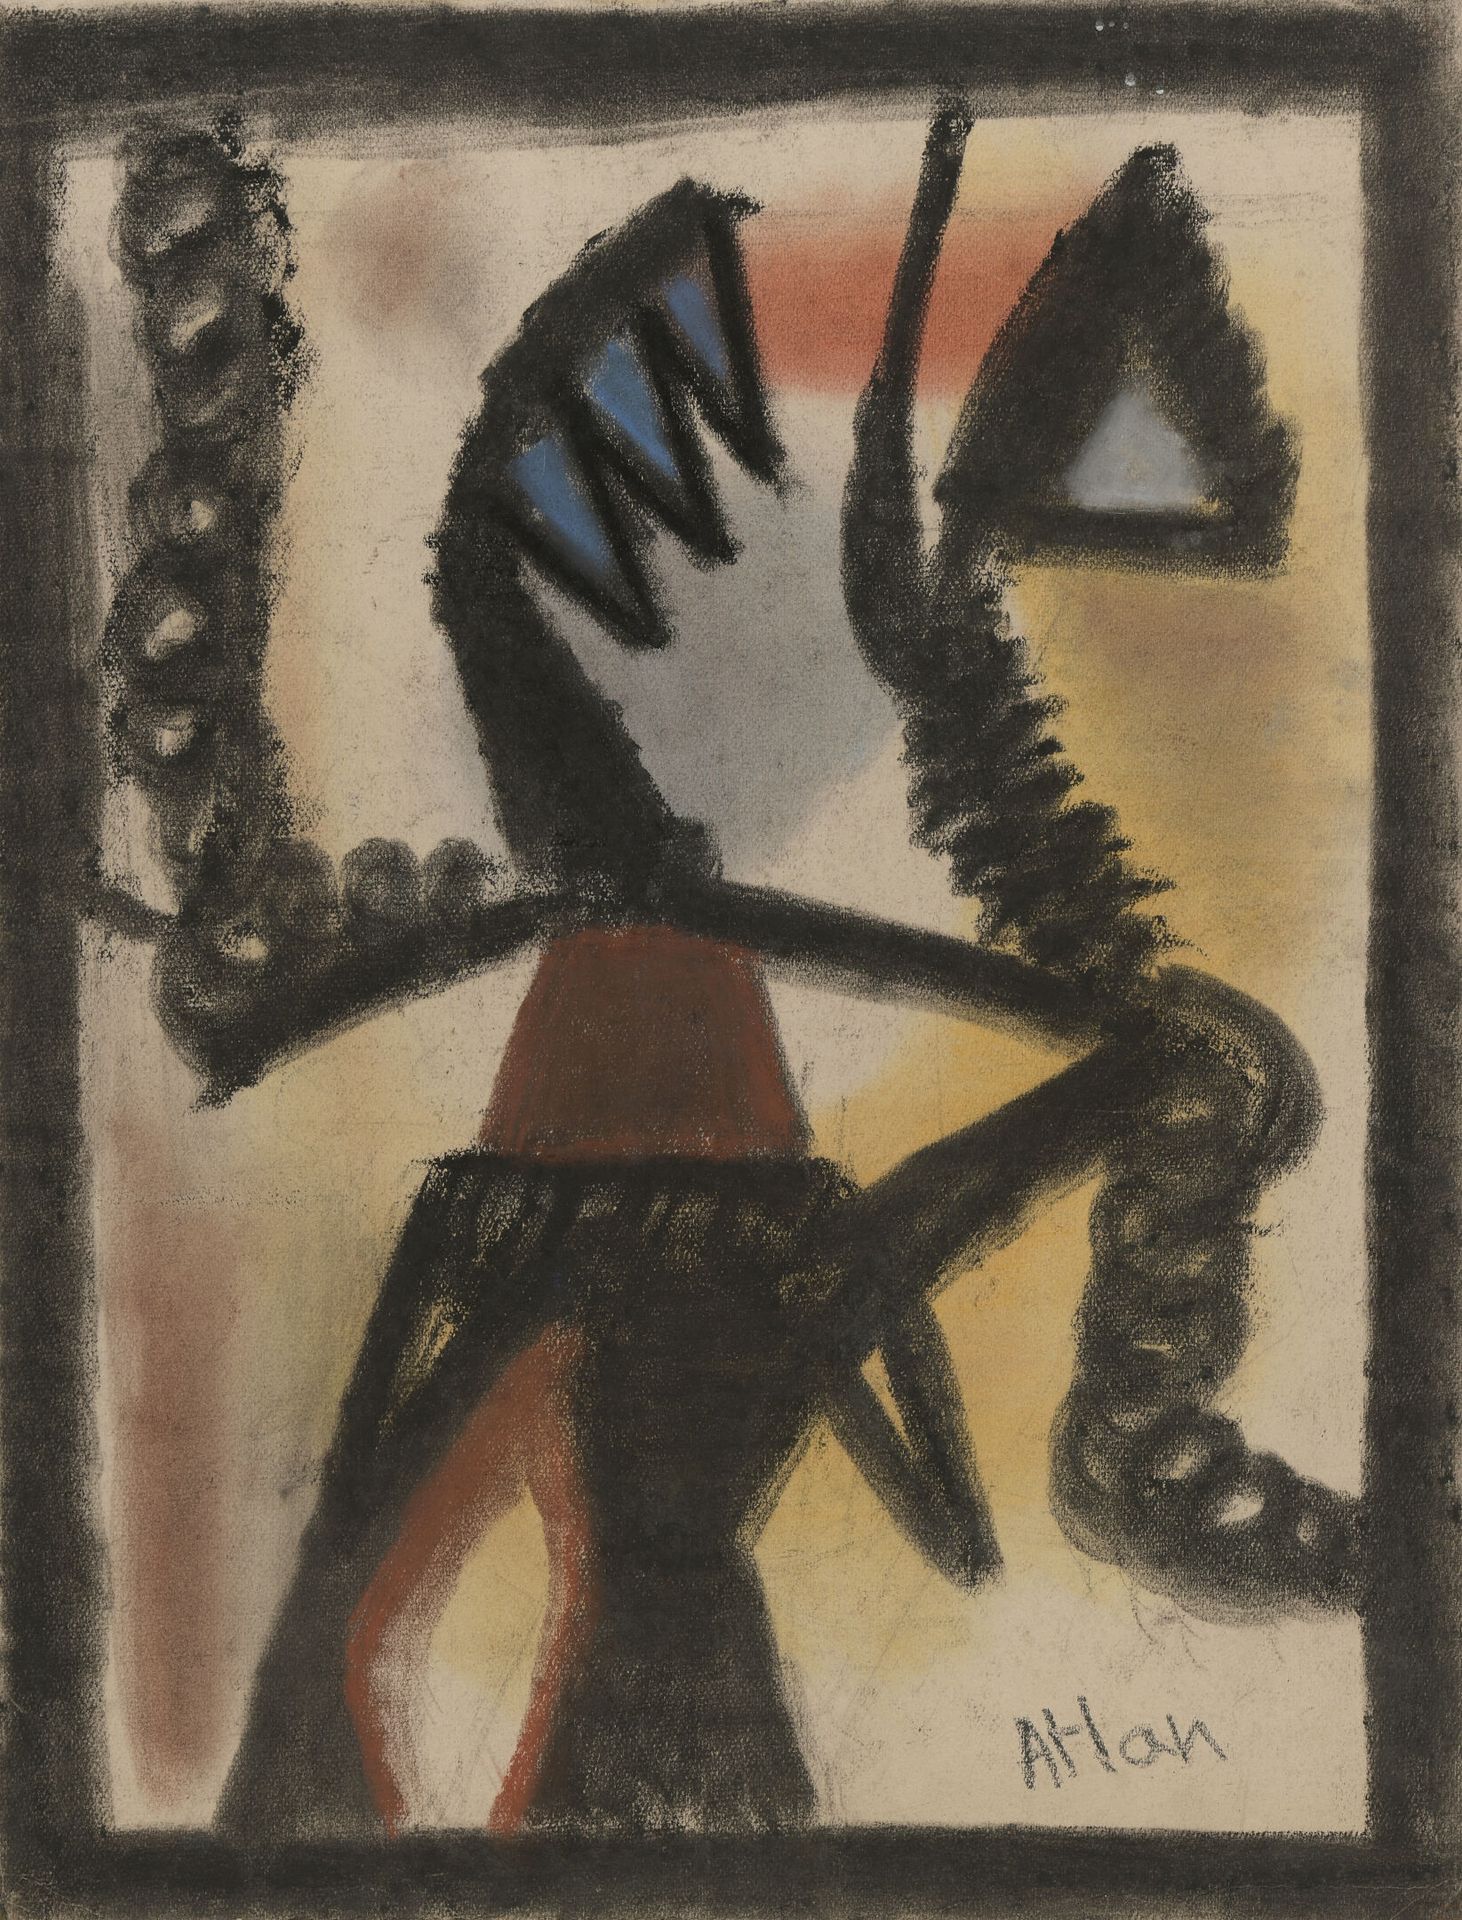 Null 让-米歇尔-阿特兰(1913-1960)

无题》，1953年

粉彩画，左下角有签名

H.65 cm - W. 50 cm

右上方有非常小的白色&hellip;